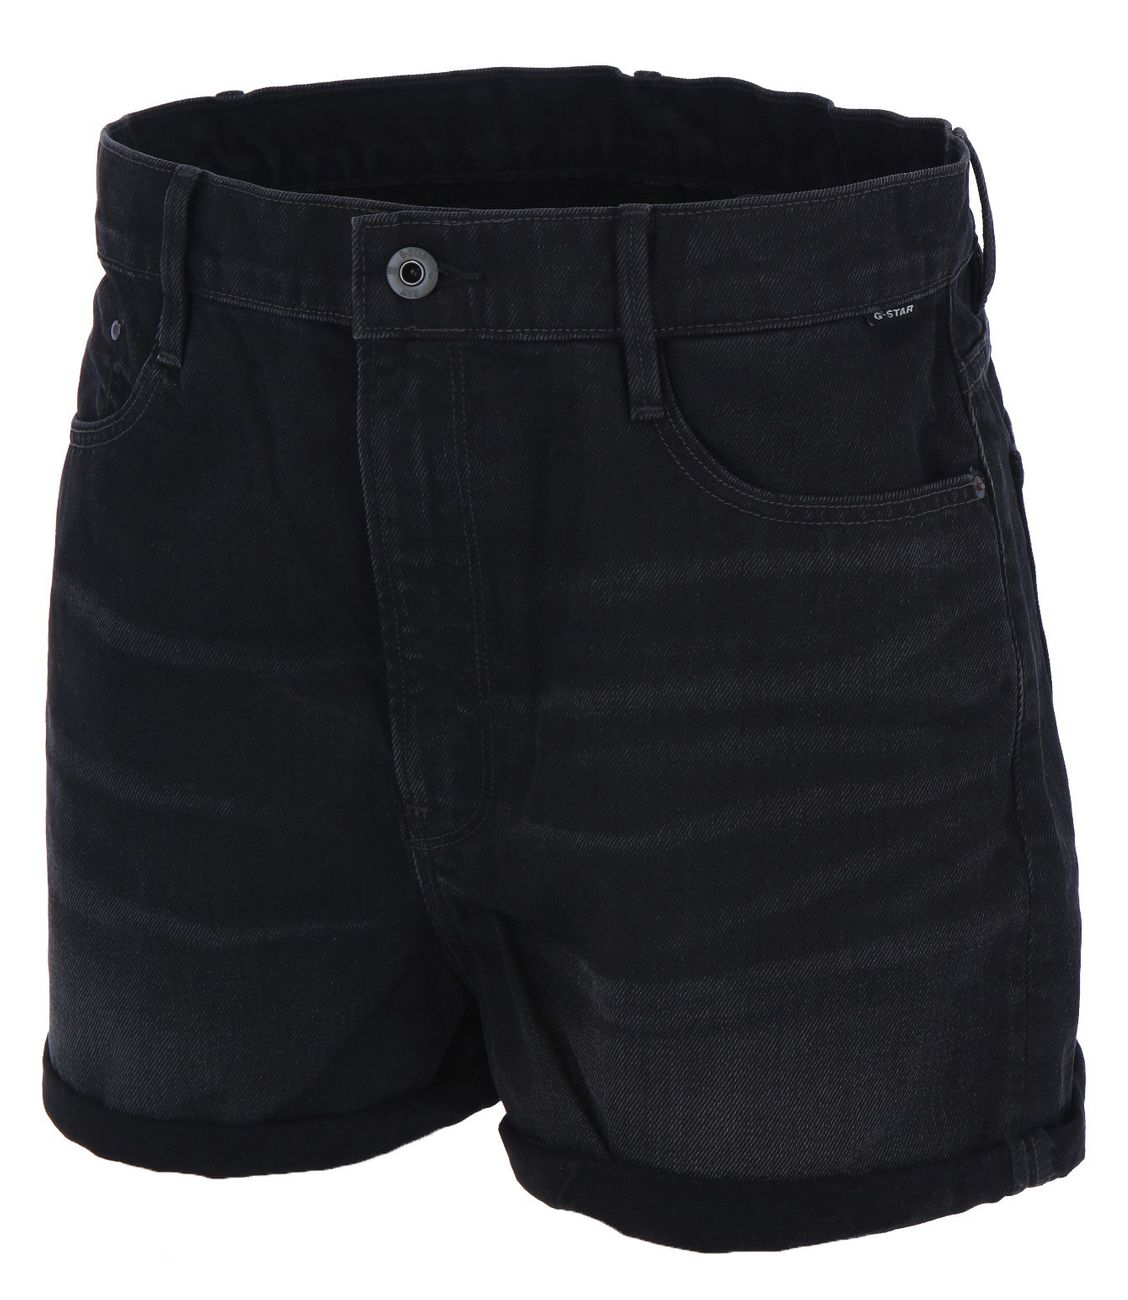 G-STAR RAW DENIM TEDIE SHORT worn in black onyx Damen Shorts - G-Star Raw Denim - SAGATOO - 8719772818455